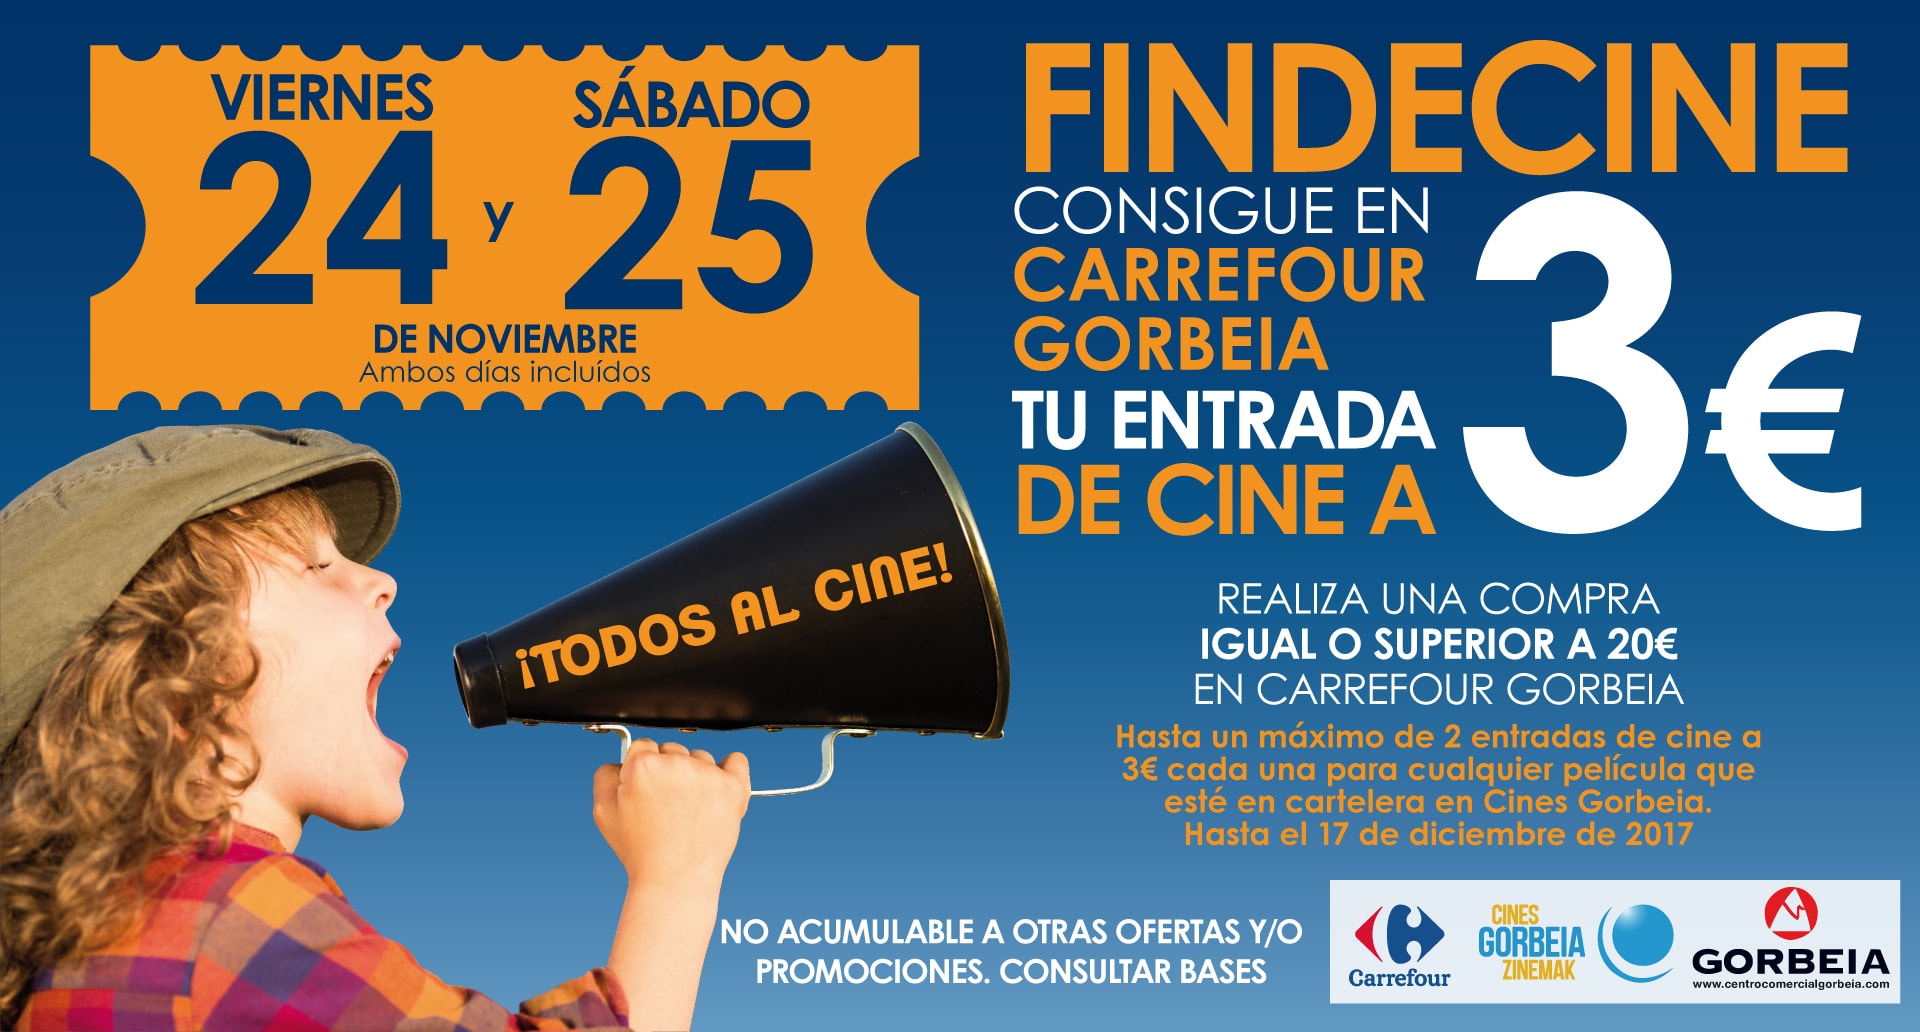 FindeCine: Consigue tu entrada de Cine en Carrefour Gorbeia a 3€